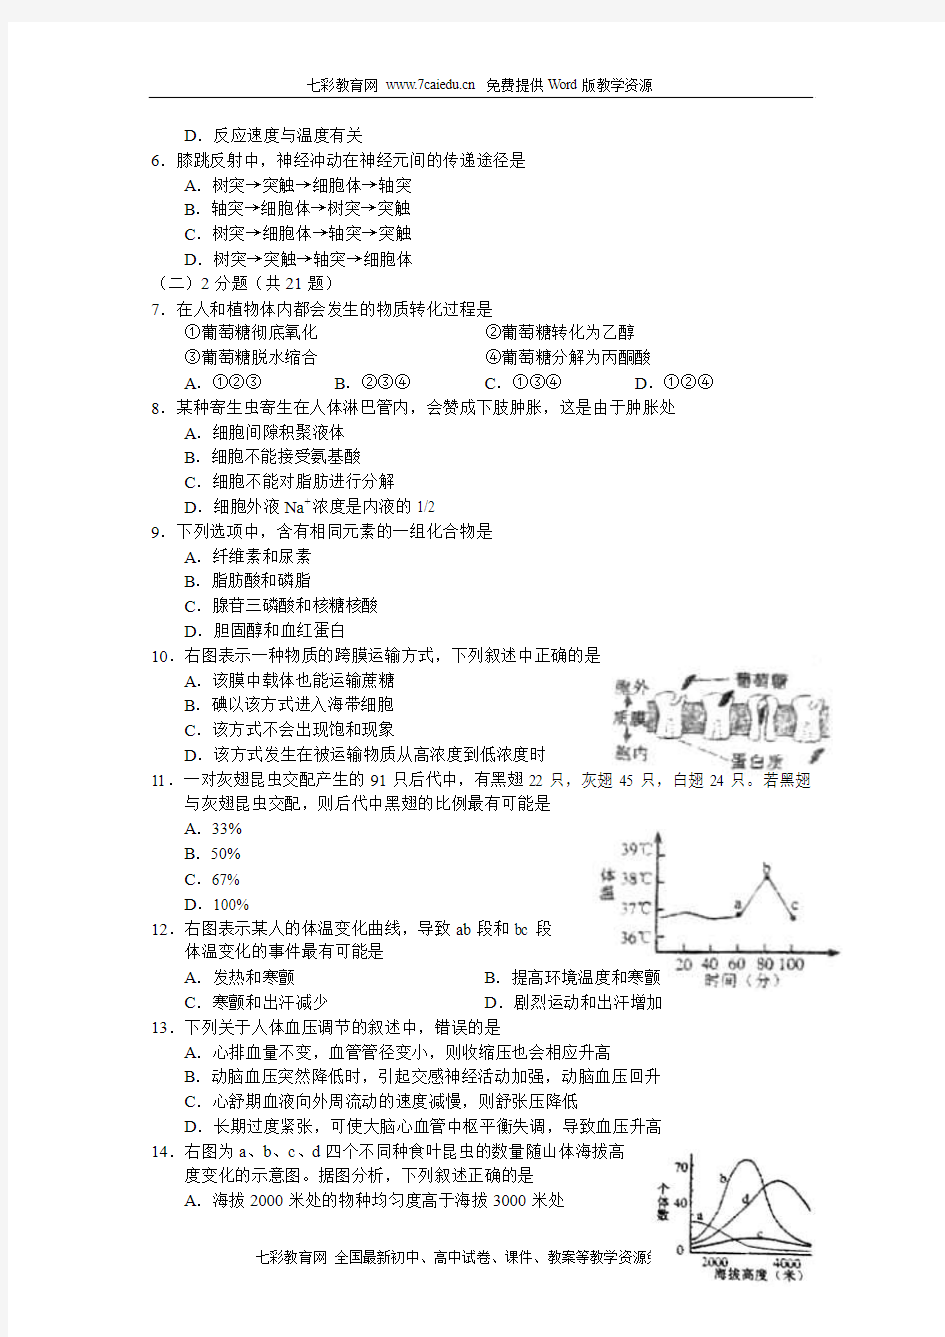 2010年上海高考真题(含答案)生命科学